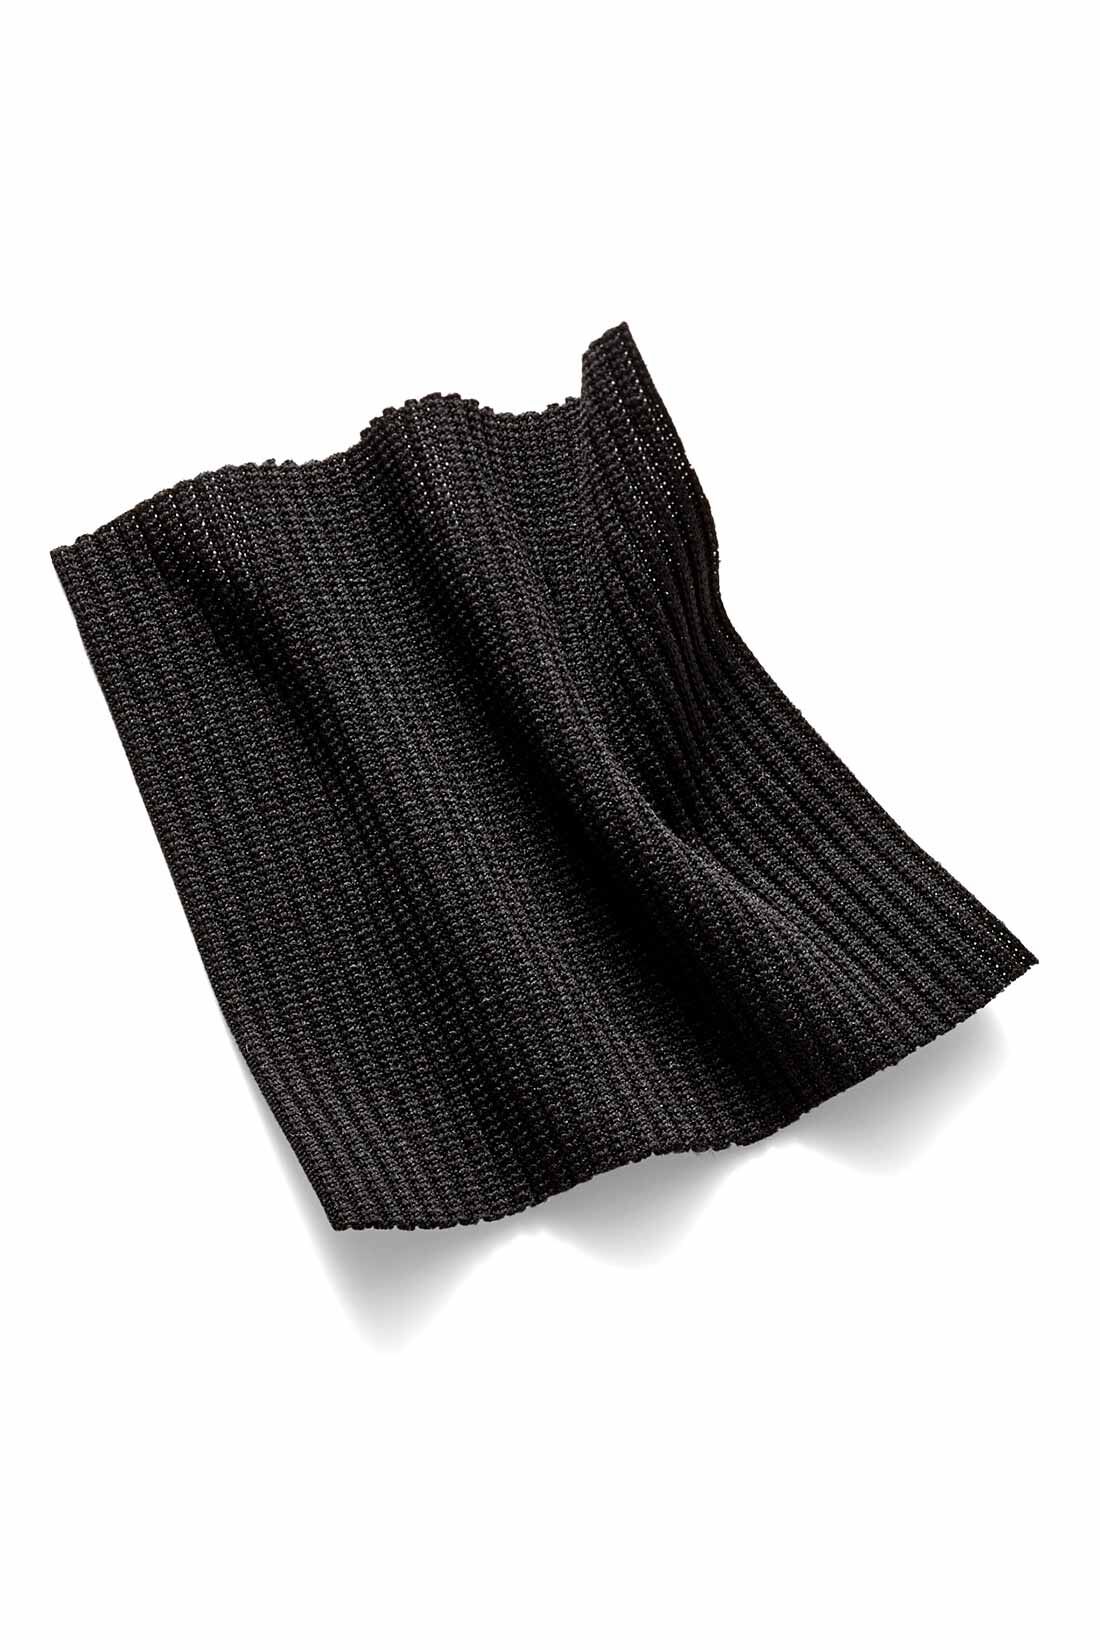 IEDIT|【コーデ買いキャンペーン】IEDIT[イディット]　福田麻琴さんコラボ リブ素材のラッシュガードカーディガン〈ブラック〉|肌に張り付きにくく着心地も快適なストレッチのきいた細めリブ素材。洋服のように着られる上品なブラック。